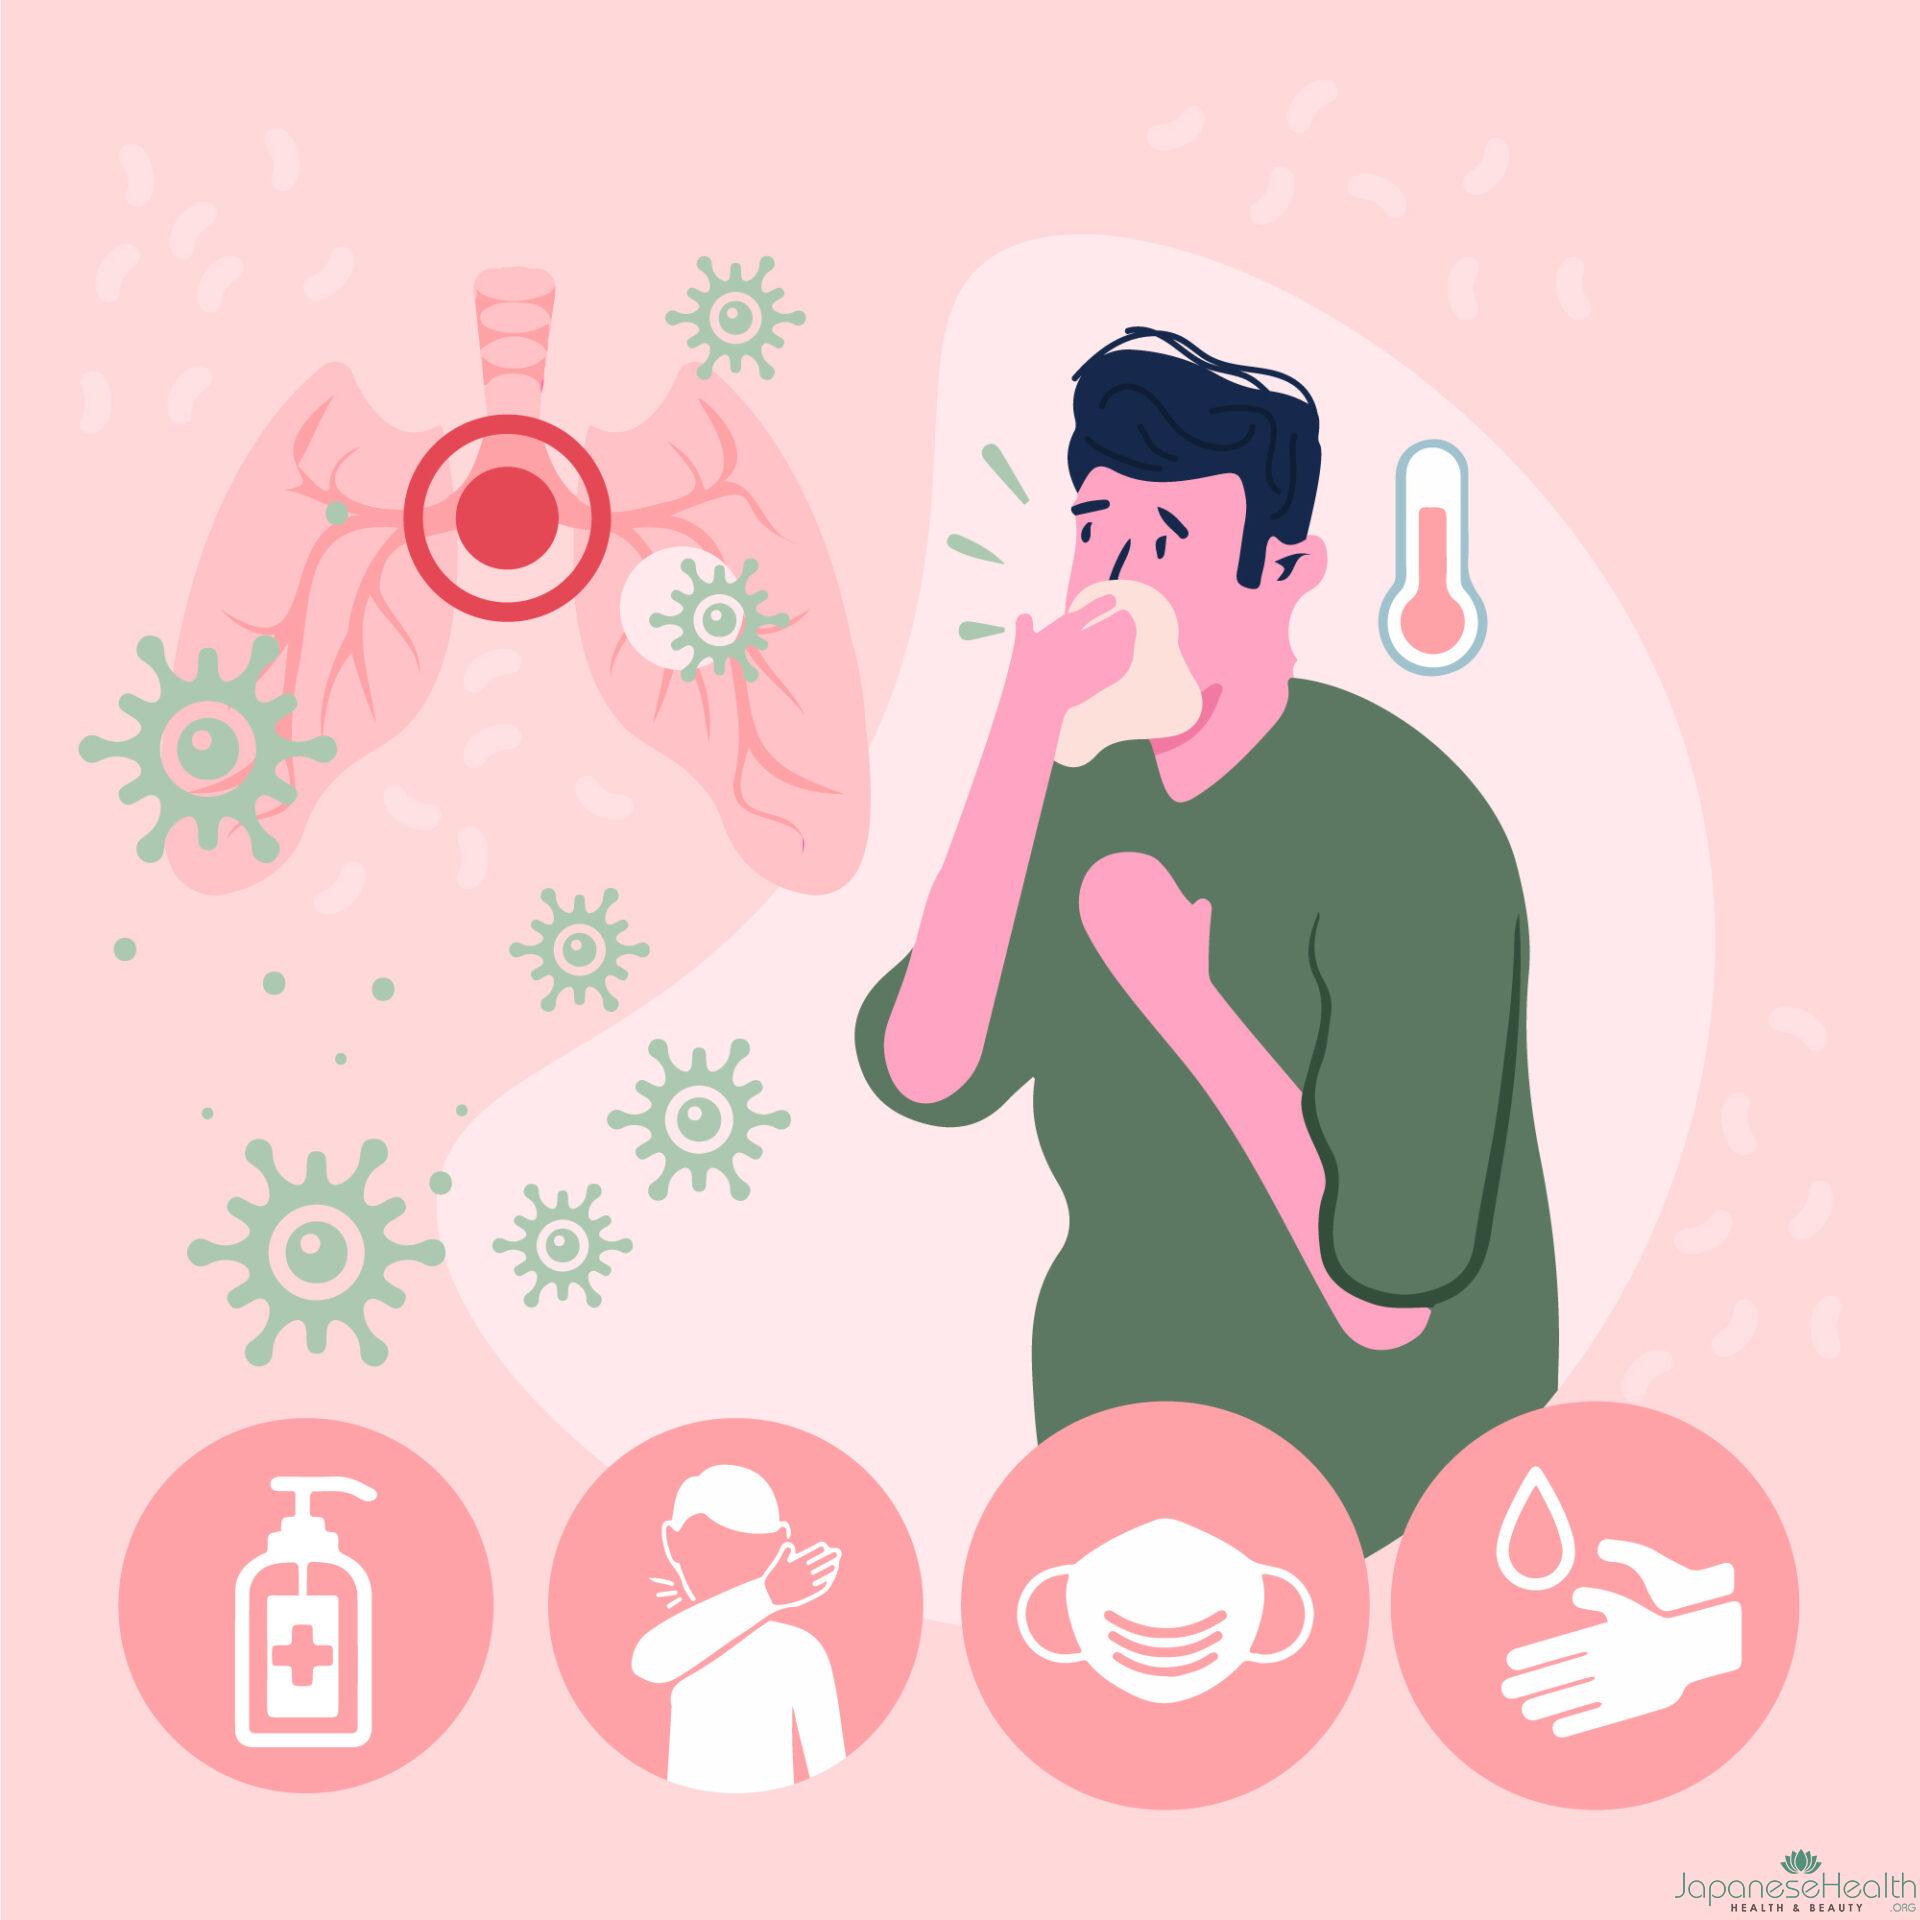 風邪やインフルエンザなどのウイルス感染症が原因で慢性上咽頭炎を引き起こすことがあります。